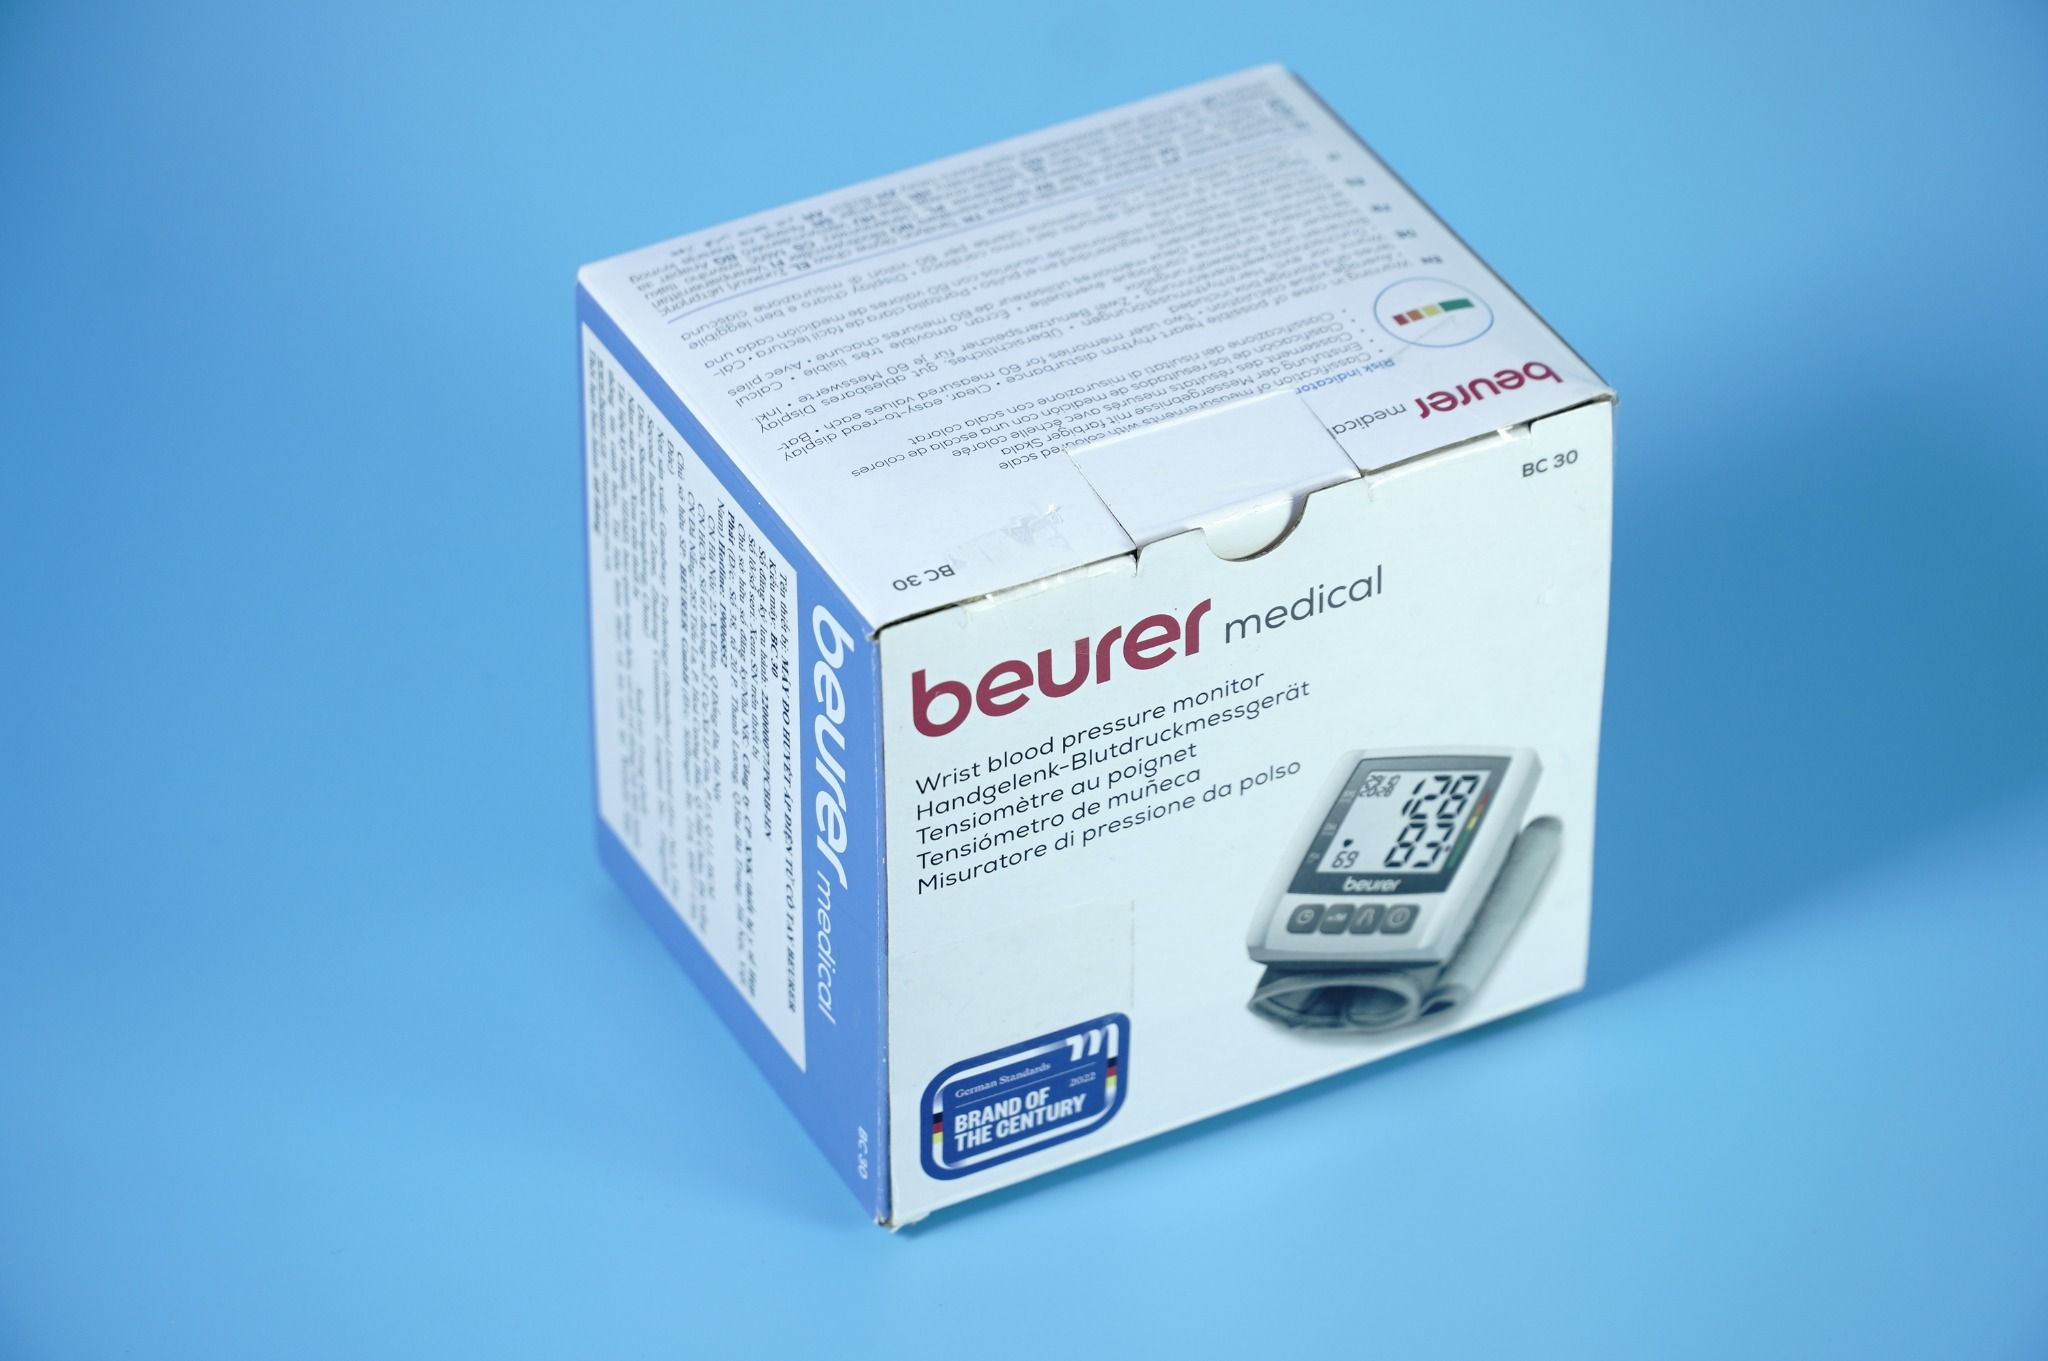  Máy đo huyết áp cổ tay BEURER BC30 nhỏ gọn, thông minh, chính xác tự động 